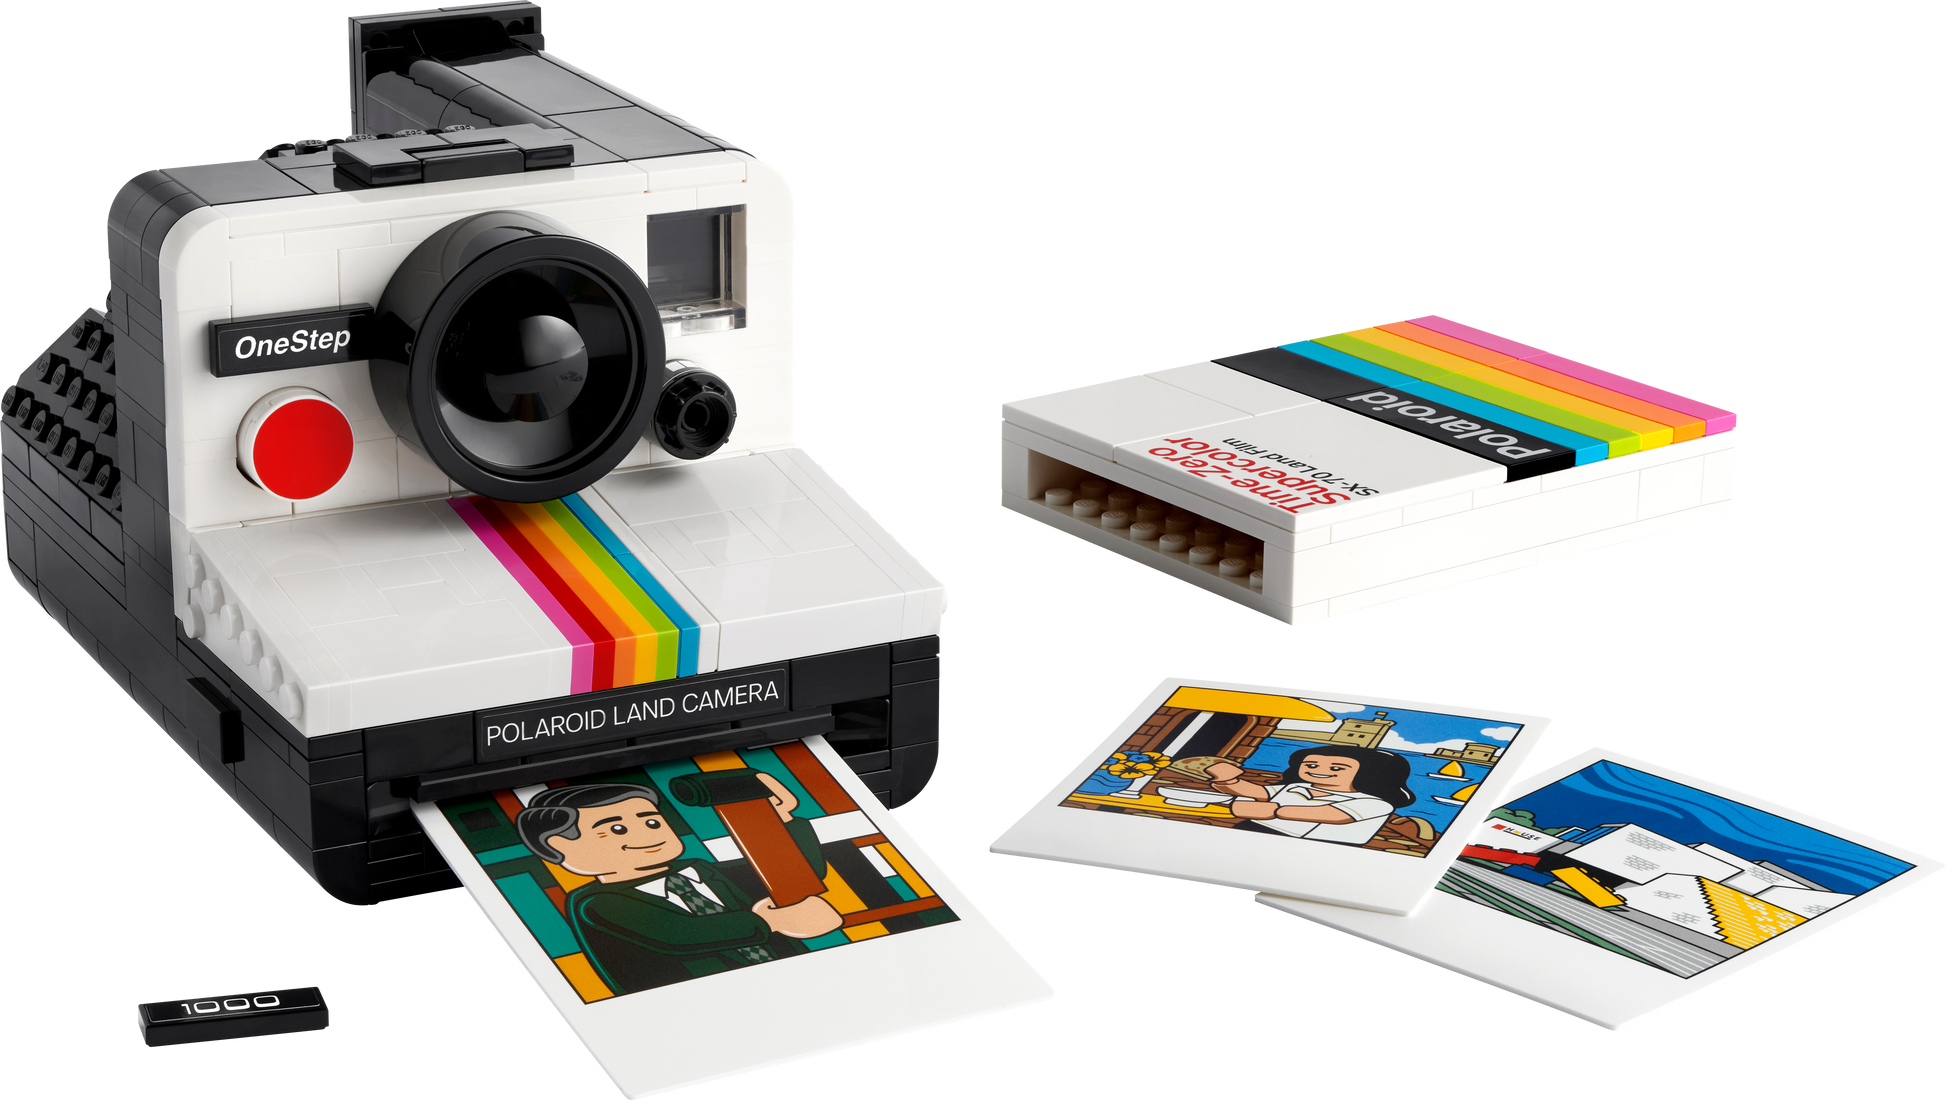 LEGO Polaroid camera 21345 Ideas | 2TTOYS ✓ Official shop<br>